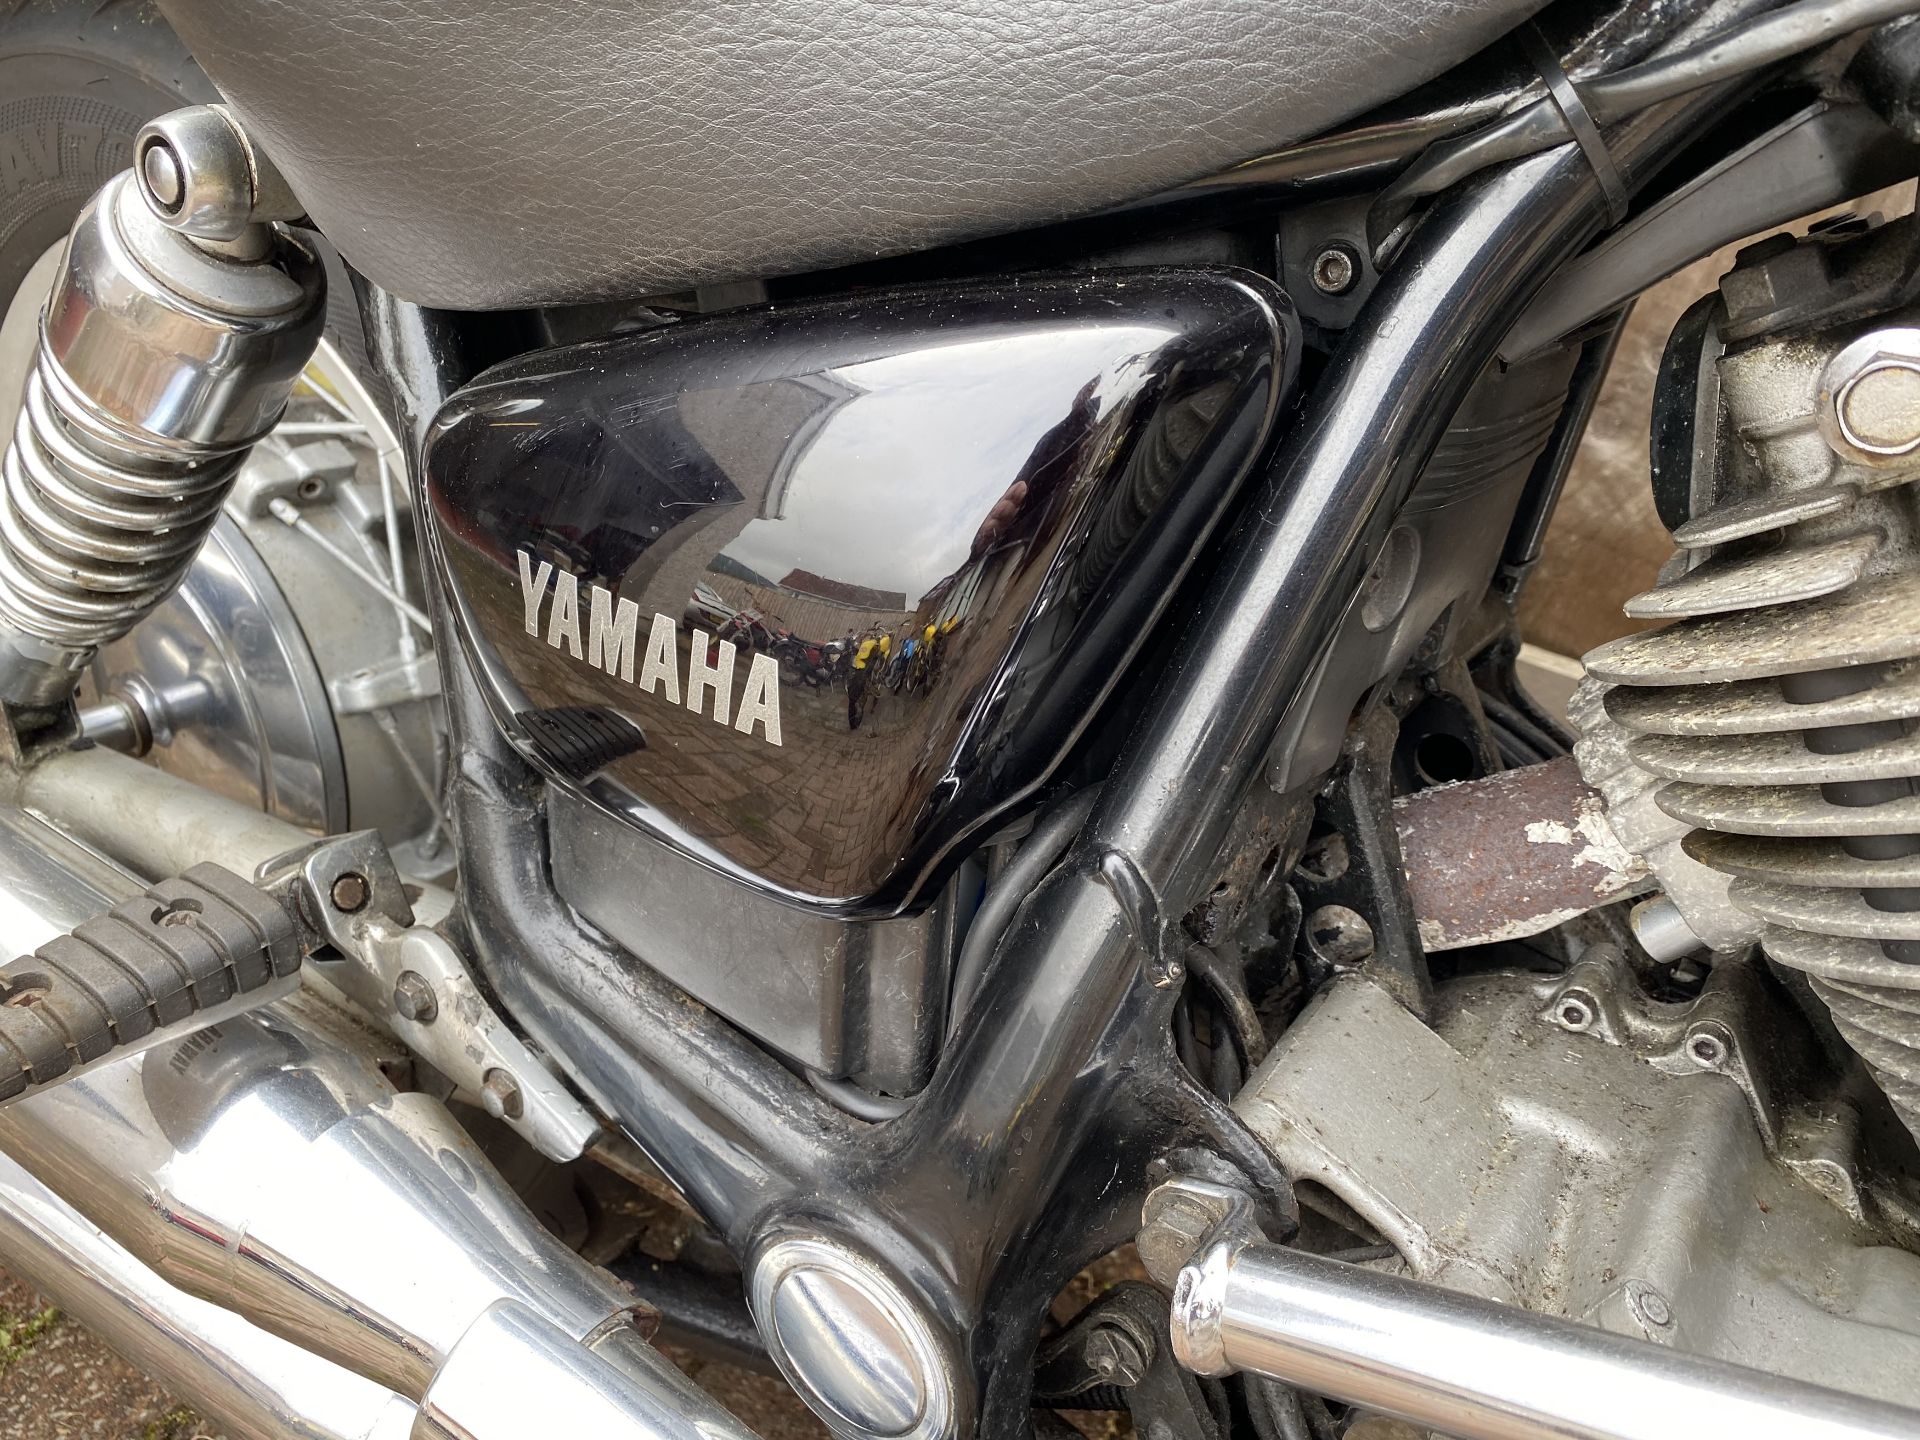 Yamaha XV750 Virago Motorcycle - Image 10 of 28